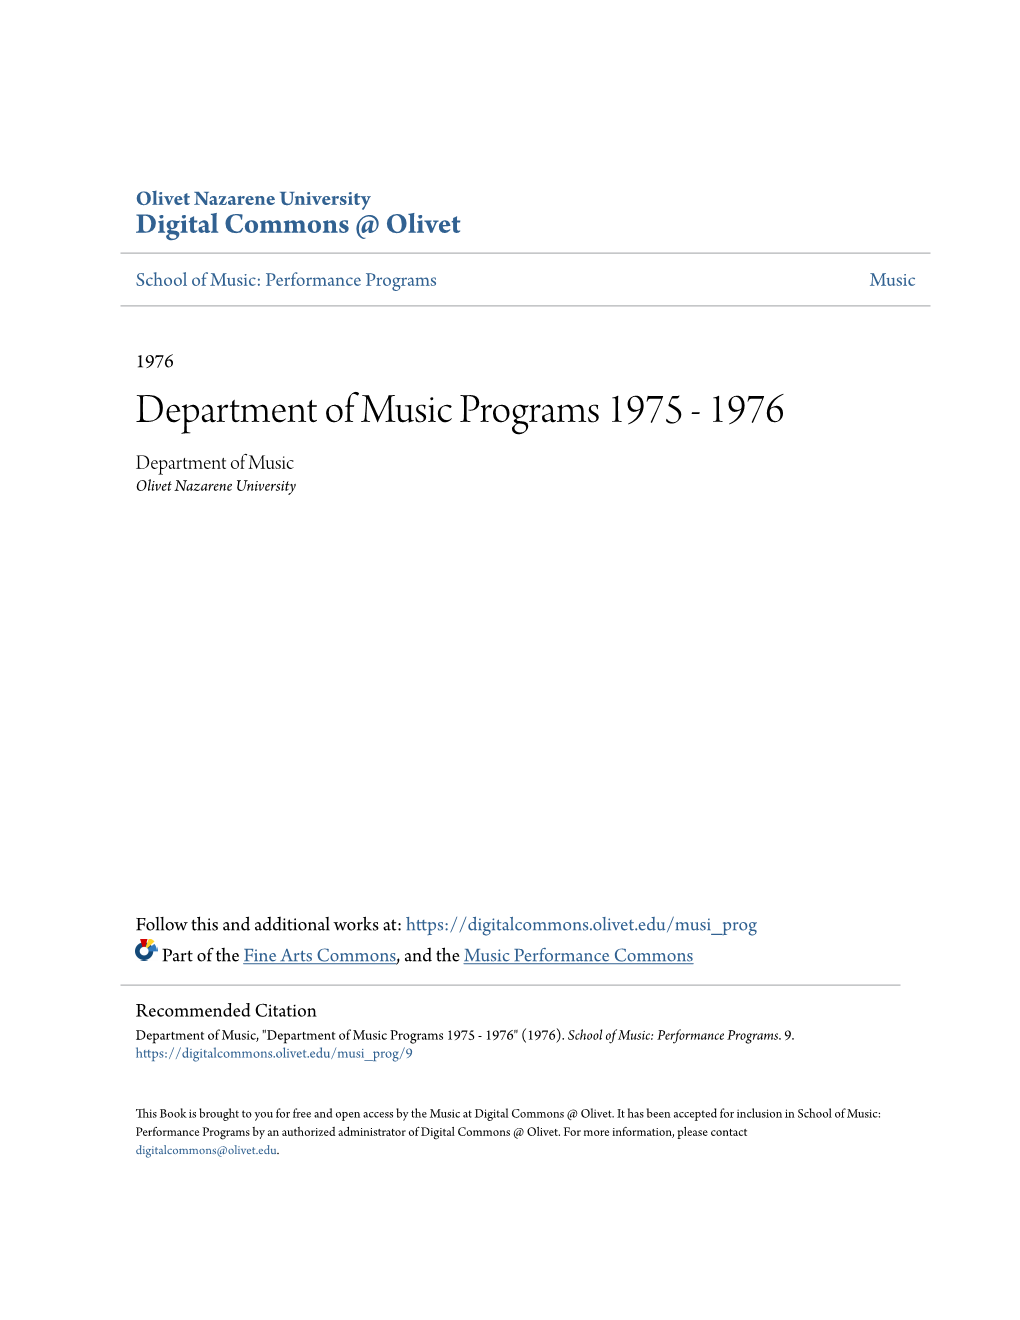 Department of Music Programs 1975 - 1976 Department of Music Olivet Nazarene University